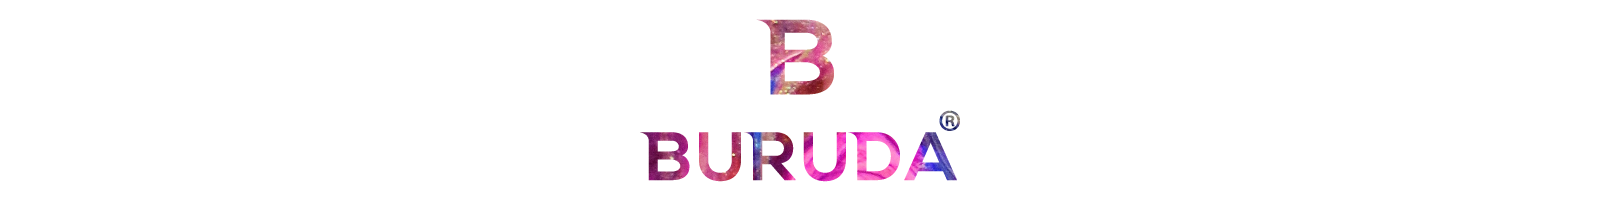 BURUDA